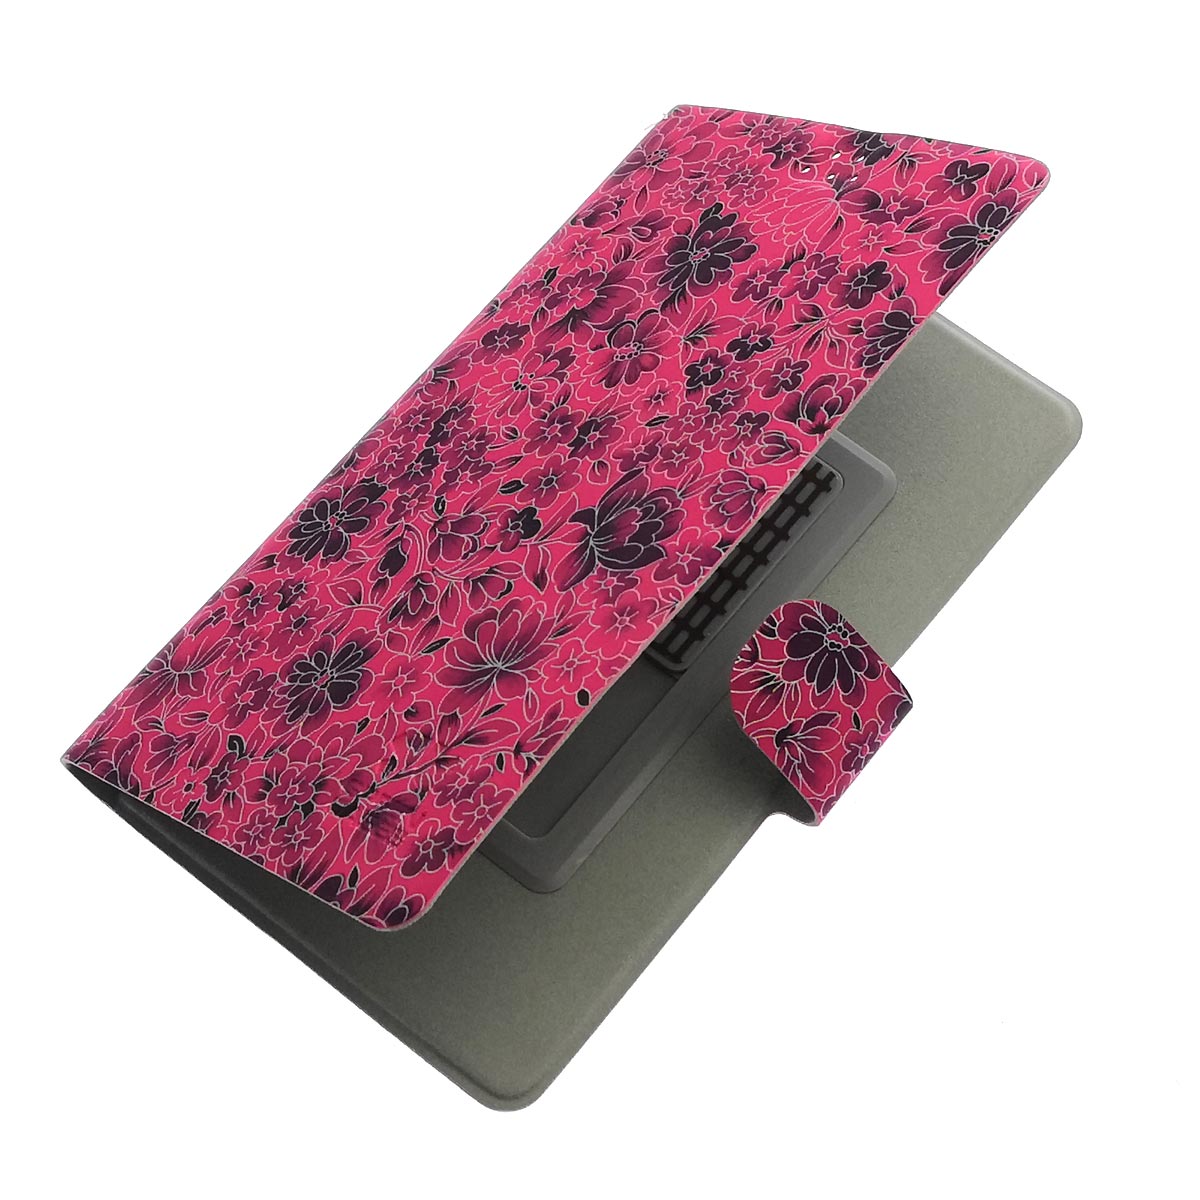 Чехол книжка универсальная GREEN CASES для смартфонов размером L, экокожа, цвет малиновый с цветочками